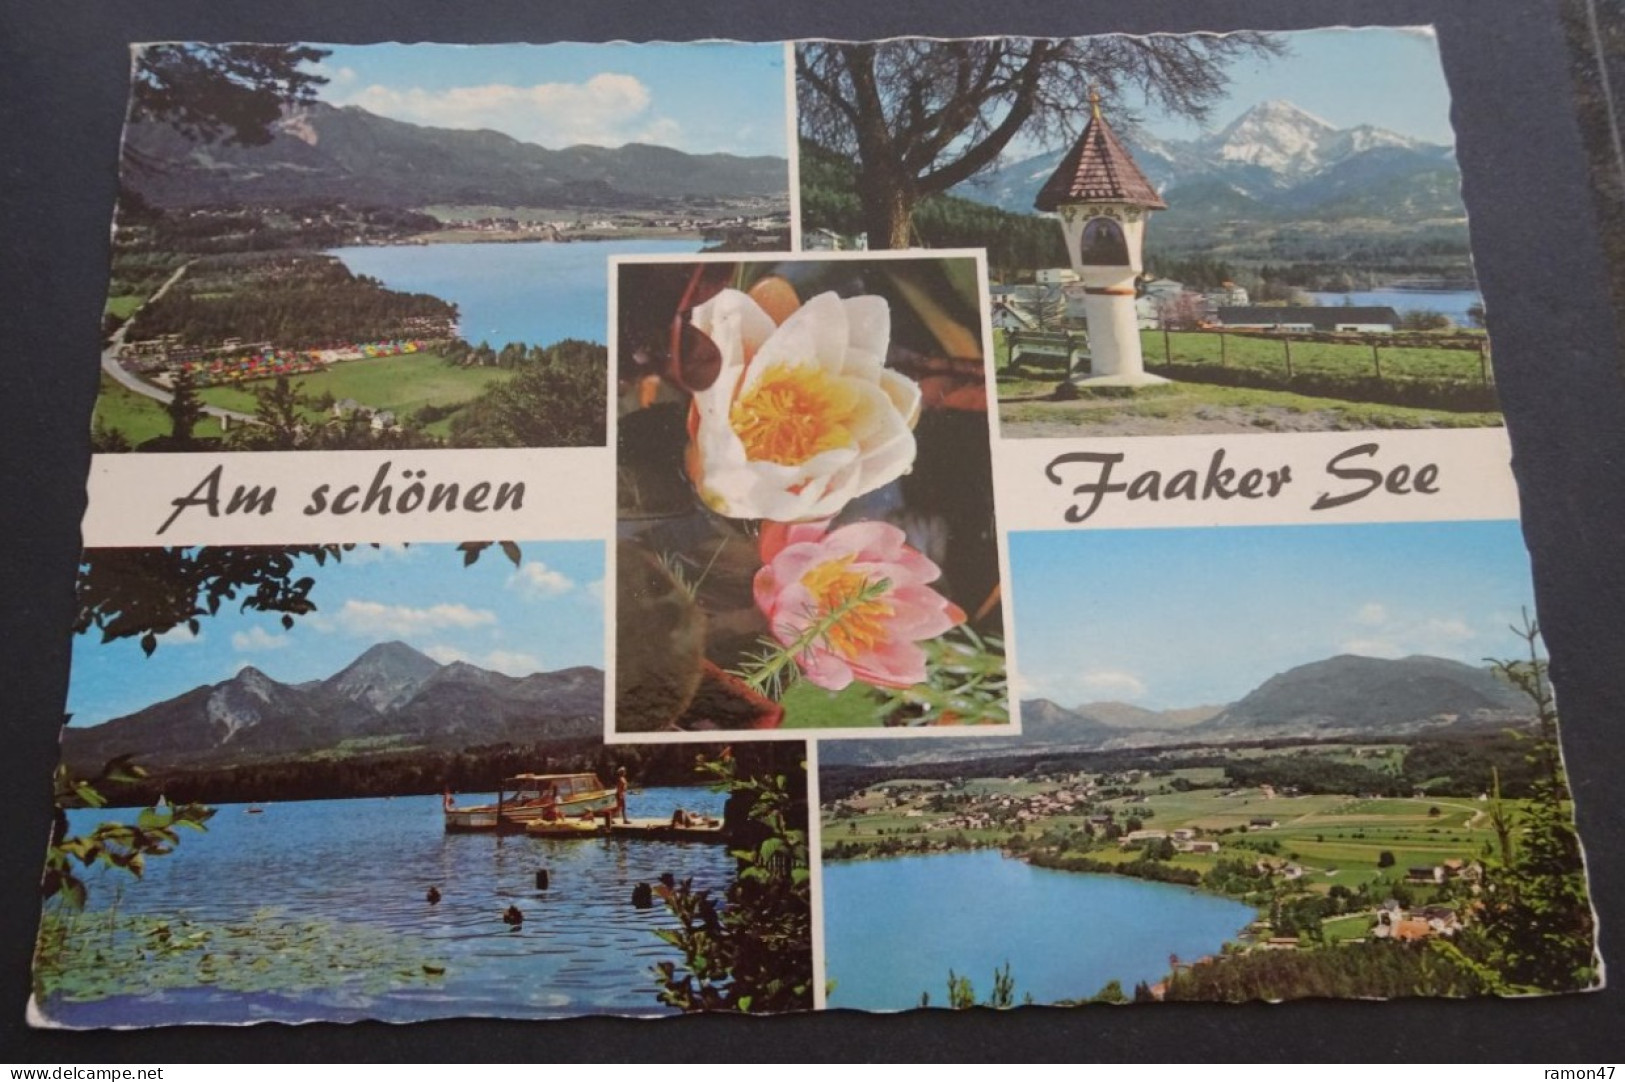 Am Schönen Faaker See - Ansichtspostkarten-Verlag Franz Schilcher, Klagenfurt - # 3/91 - Faakersee-Orte